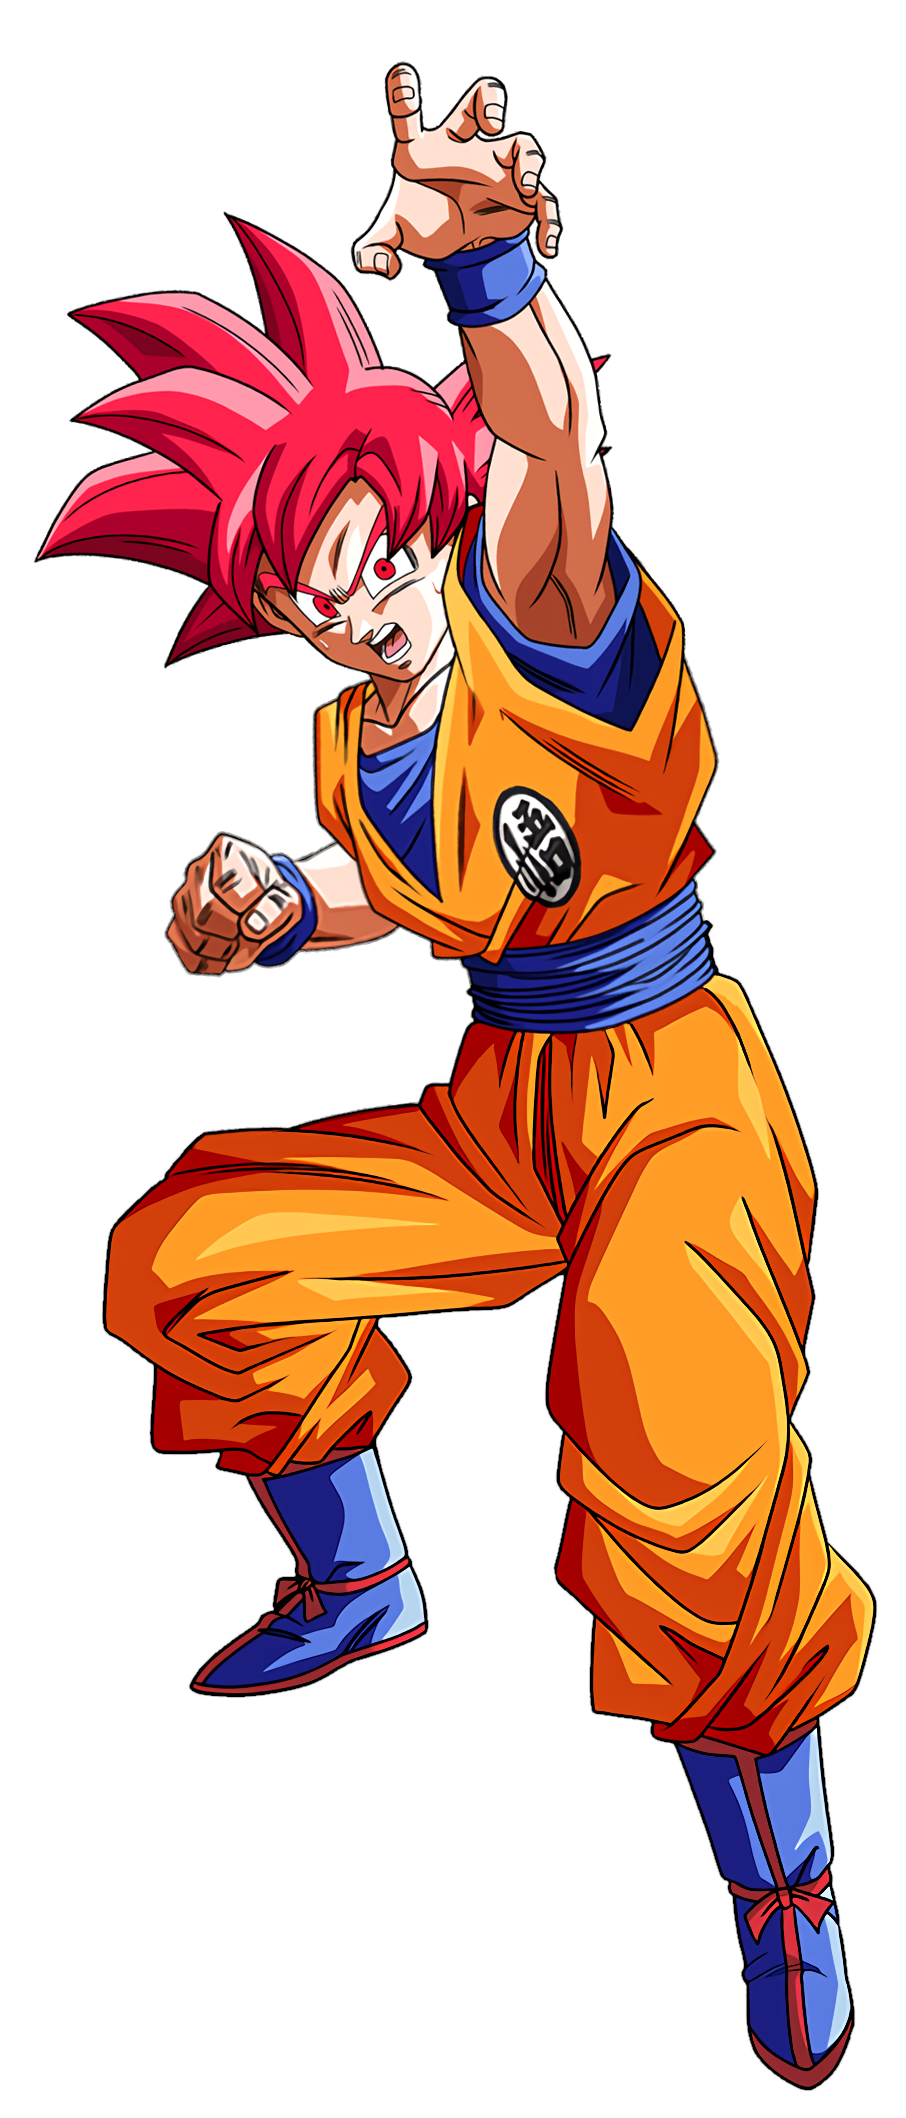 Super Saiyan God Super Saiyan Goku by spriteman1000 on DeviantArt